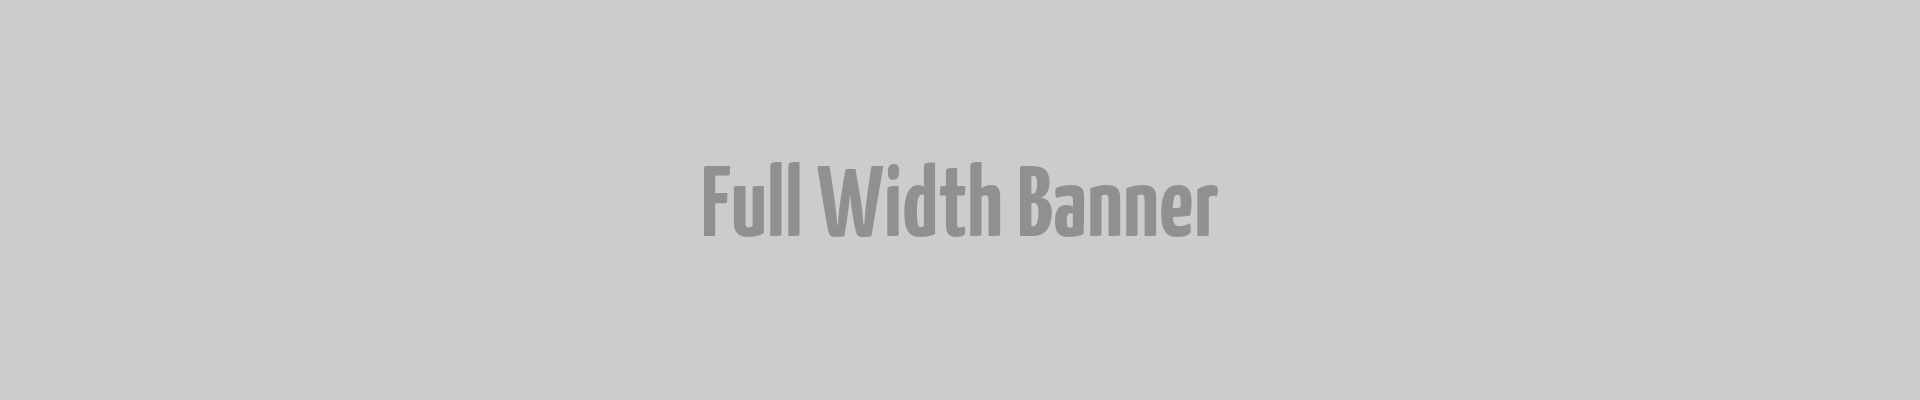 Full Width Banner